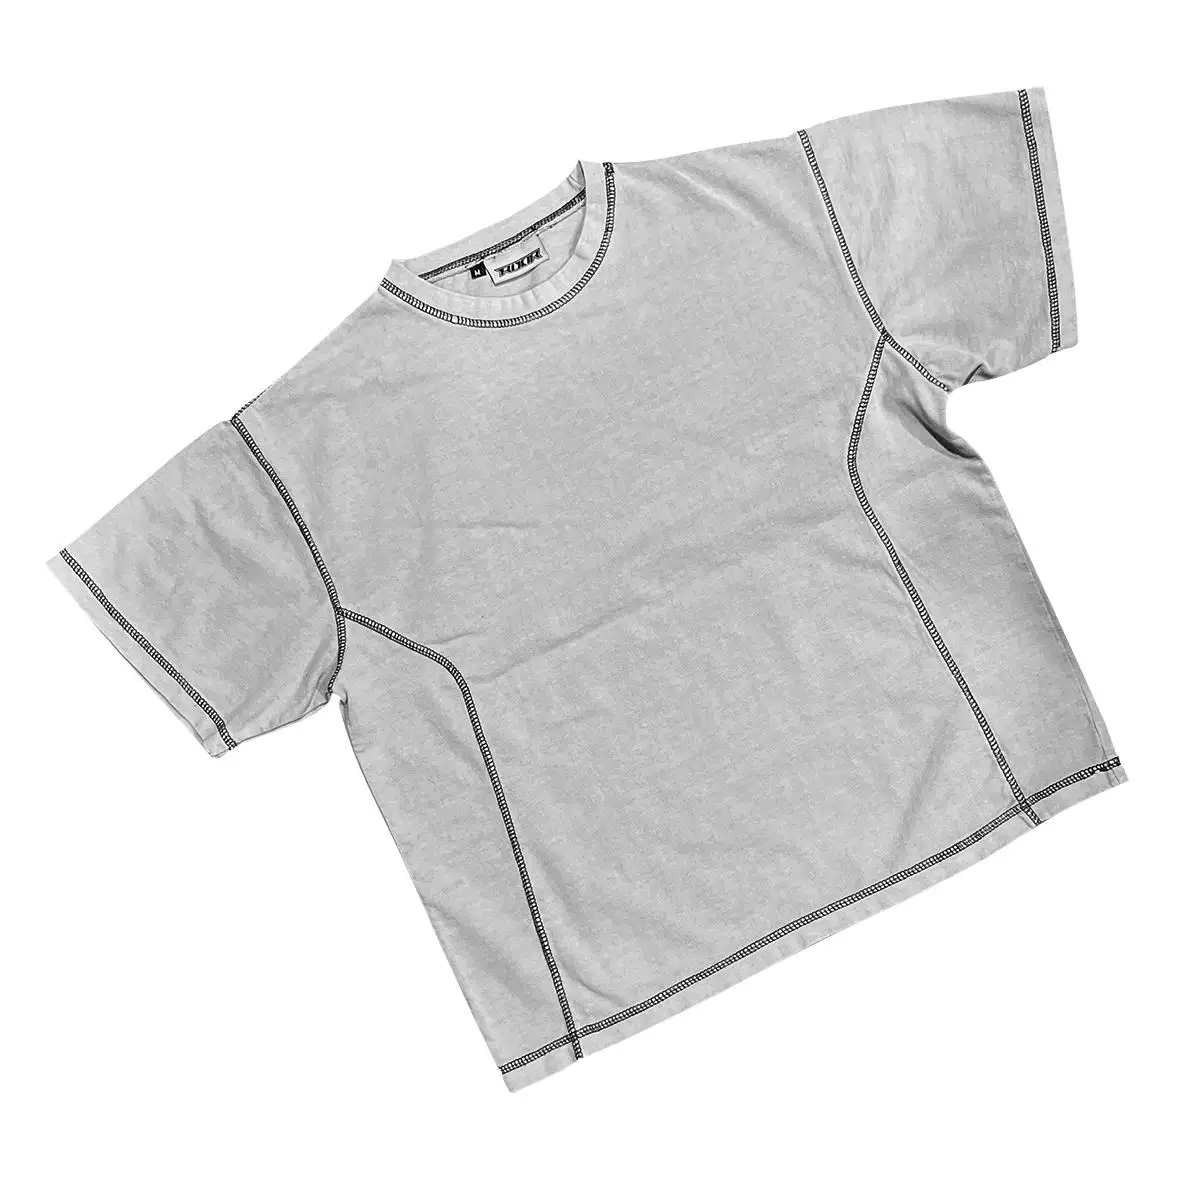 Neuentwicklung Top-Qualität Großhandel Säure gewaschen übergroße T-Shirts 280GSM Vintage gewaschen übergroße T-Shirts Kleidungs stück gefärbte T-Shirts